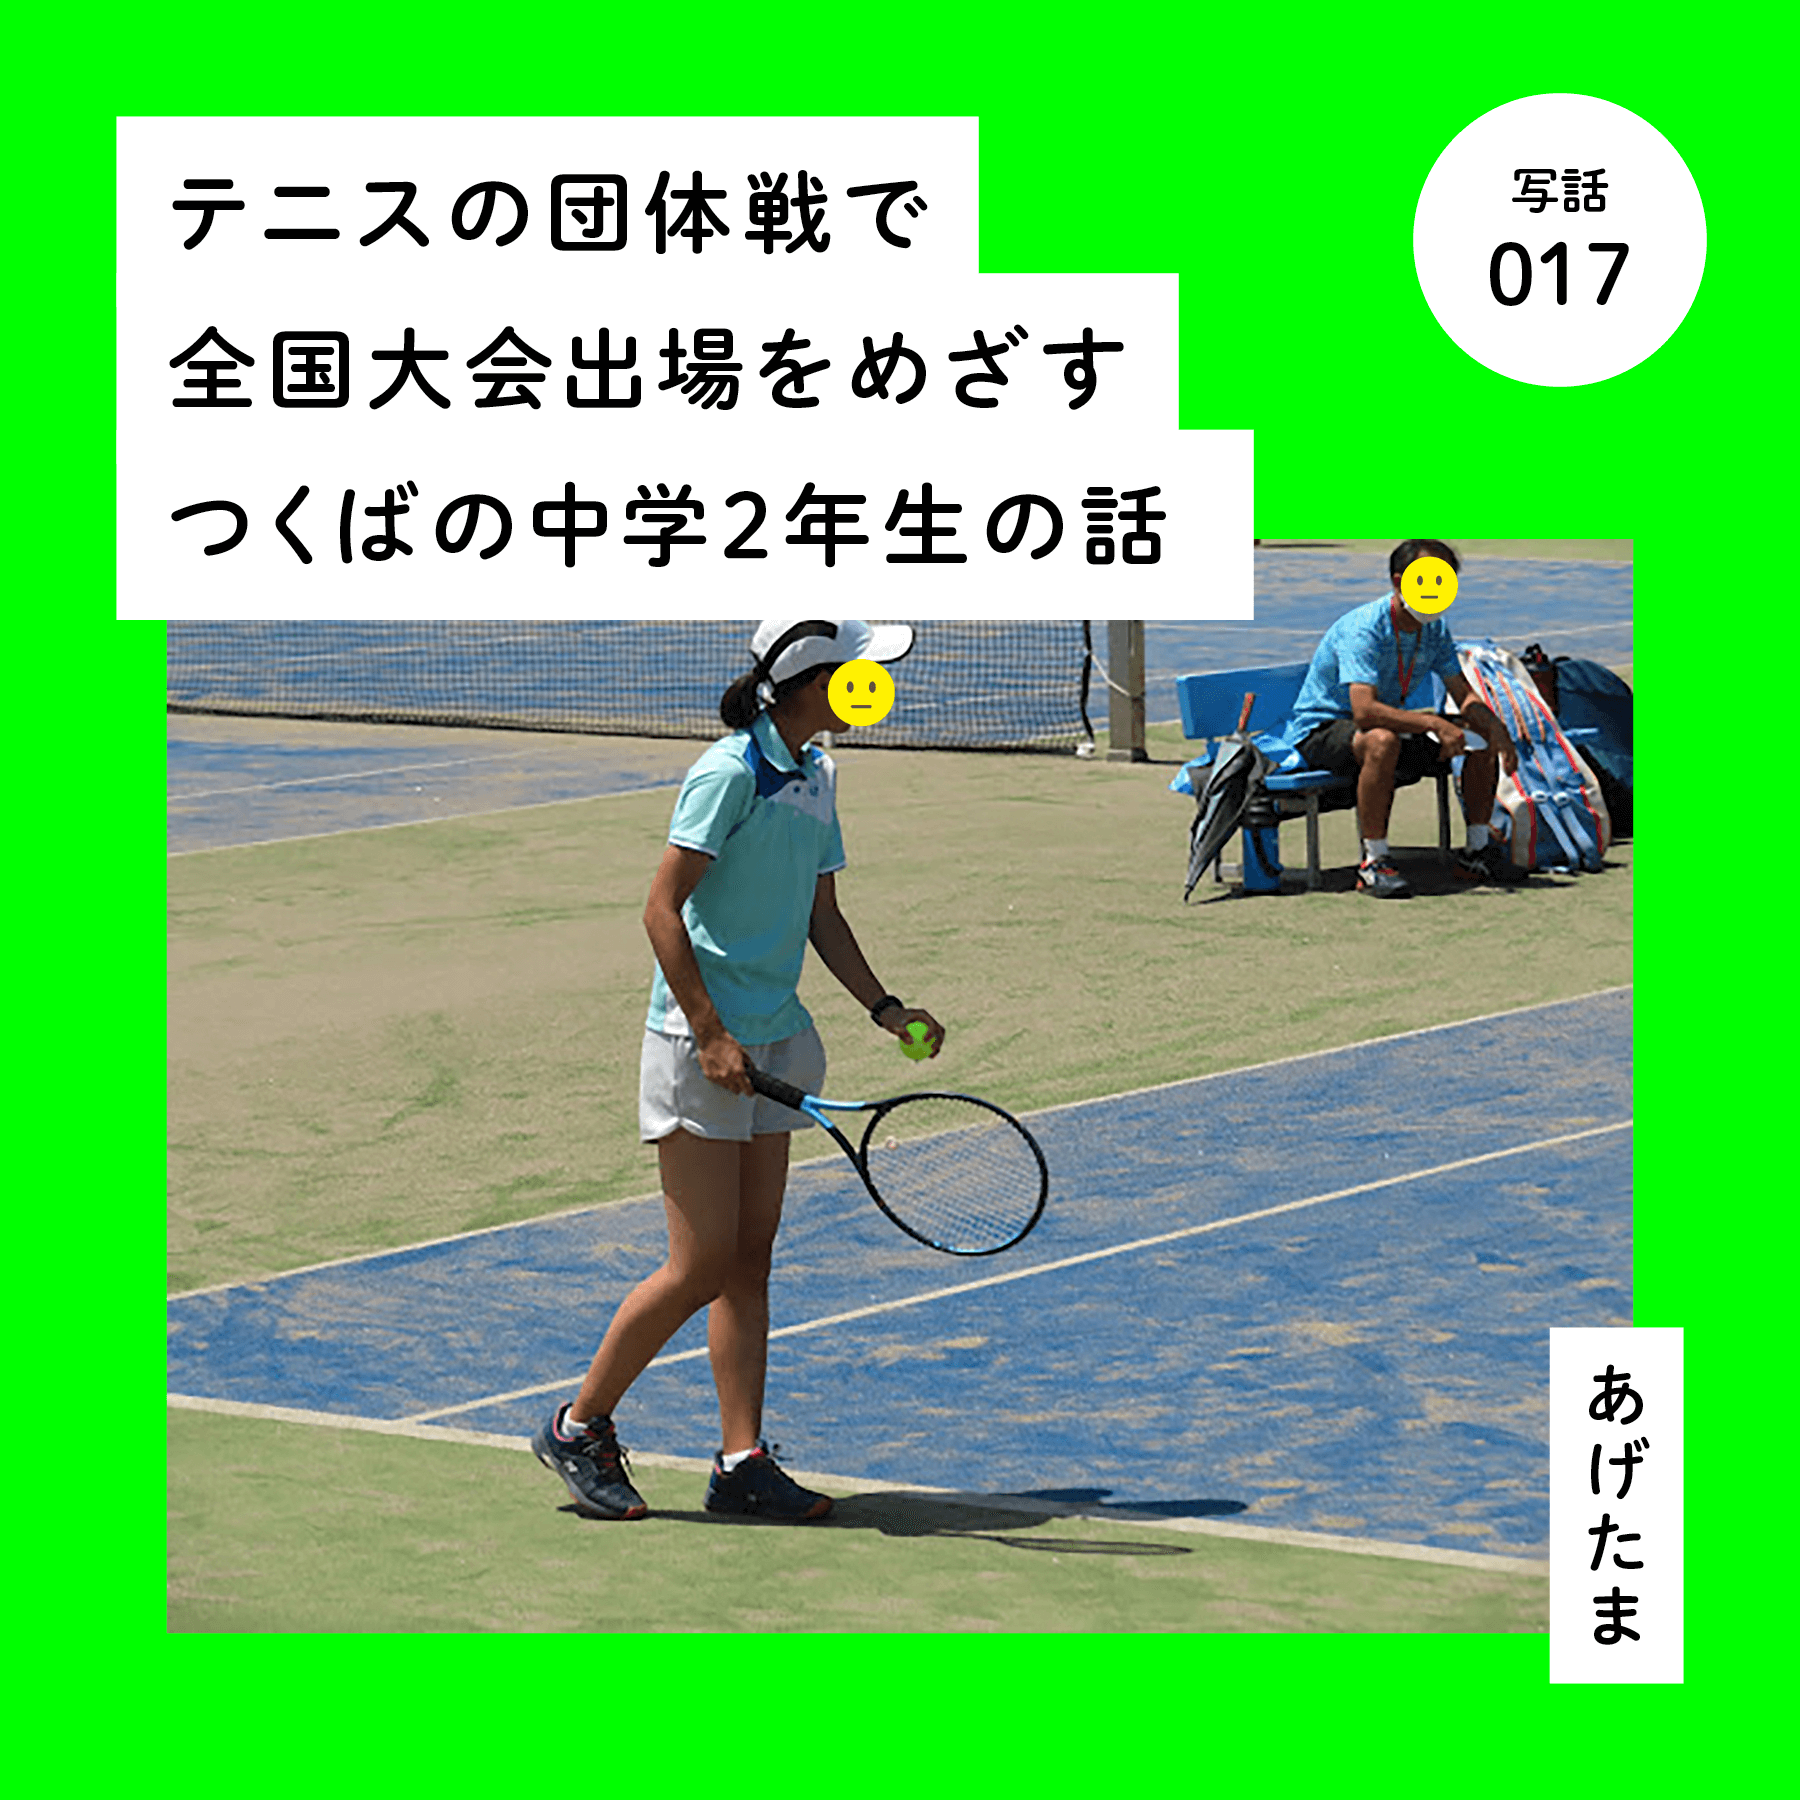 テニスの団体戦で全国大会出場をめざすつくばの中学２年生の話